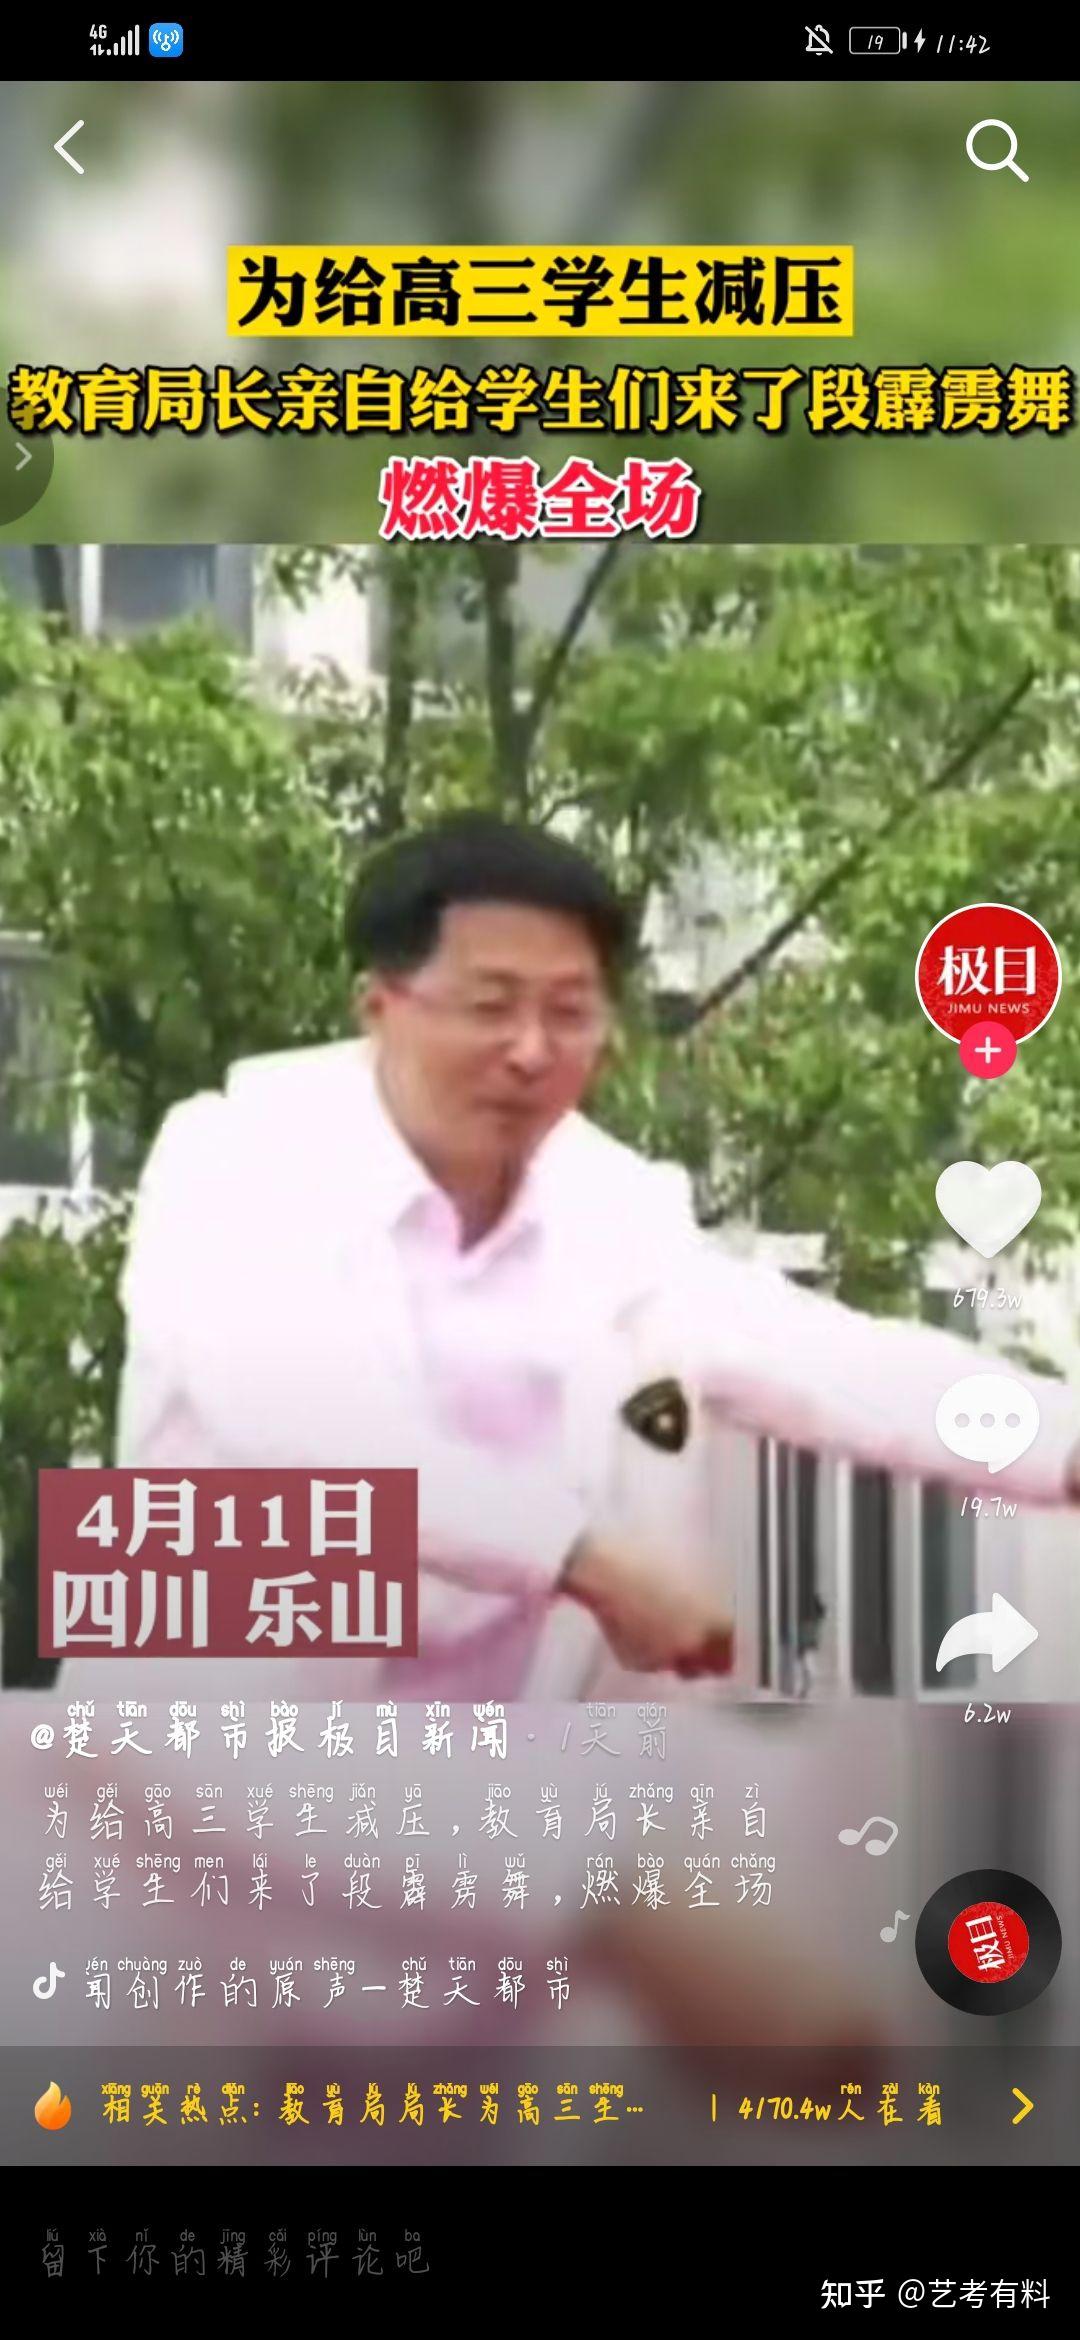 近日,四川乐山一教育局长跳霹雳舞为高考生减压的视频走红网络.